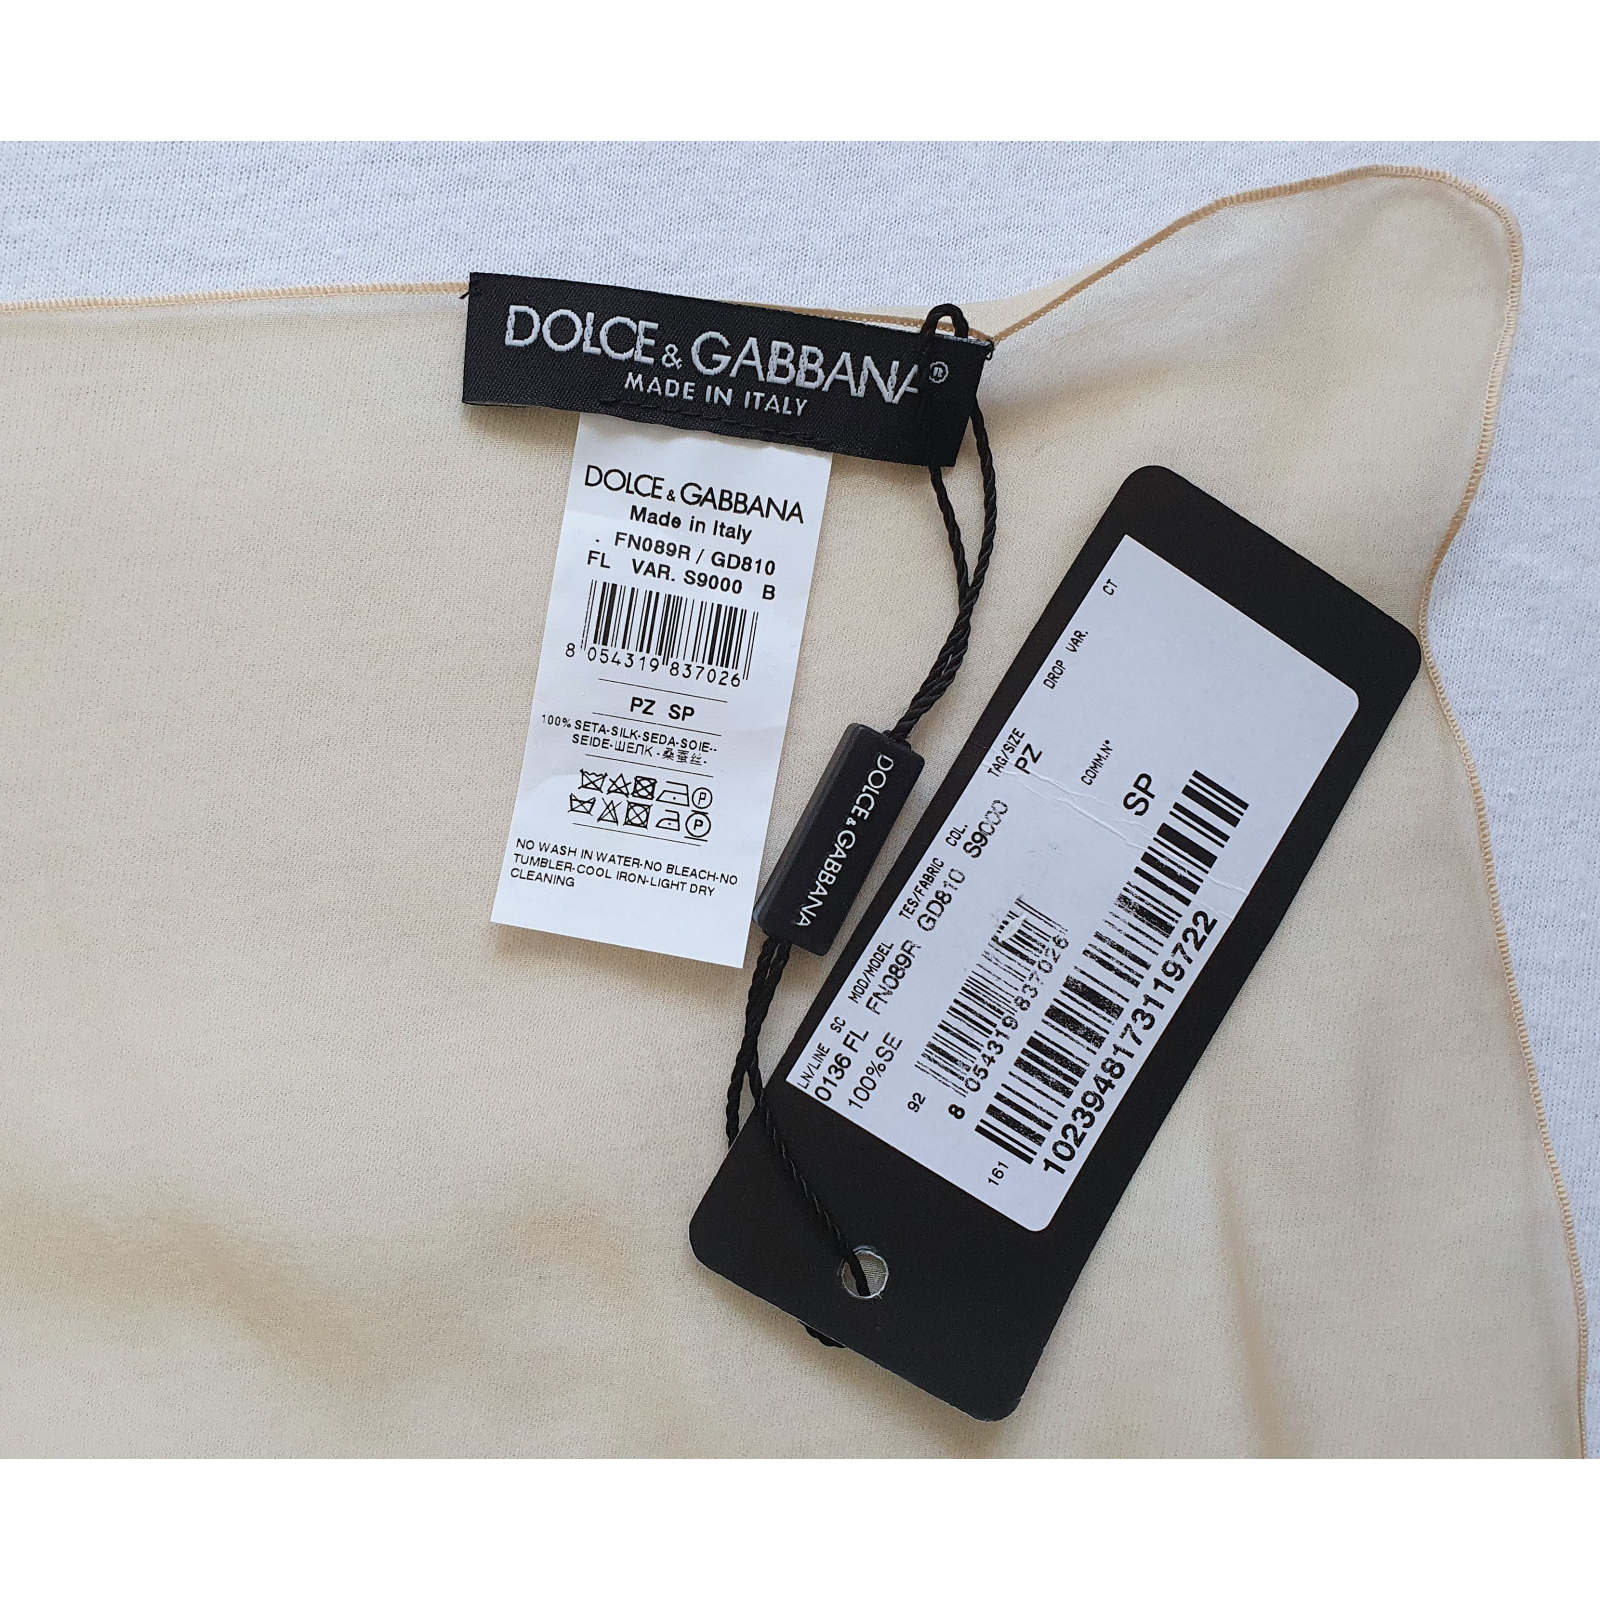 Dolce & Gabbana apaszka, 100% silk, nowa